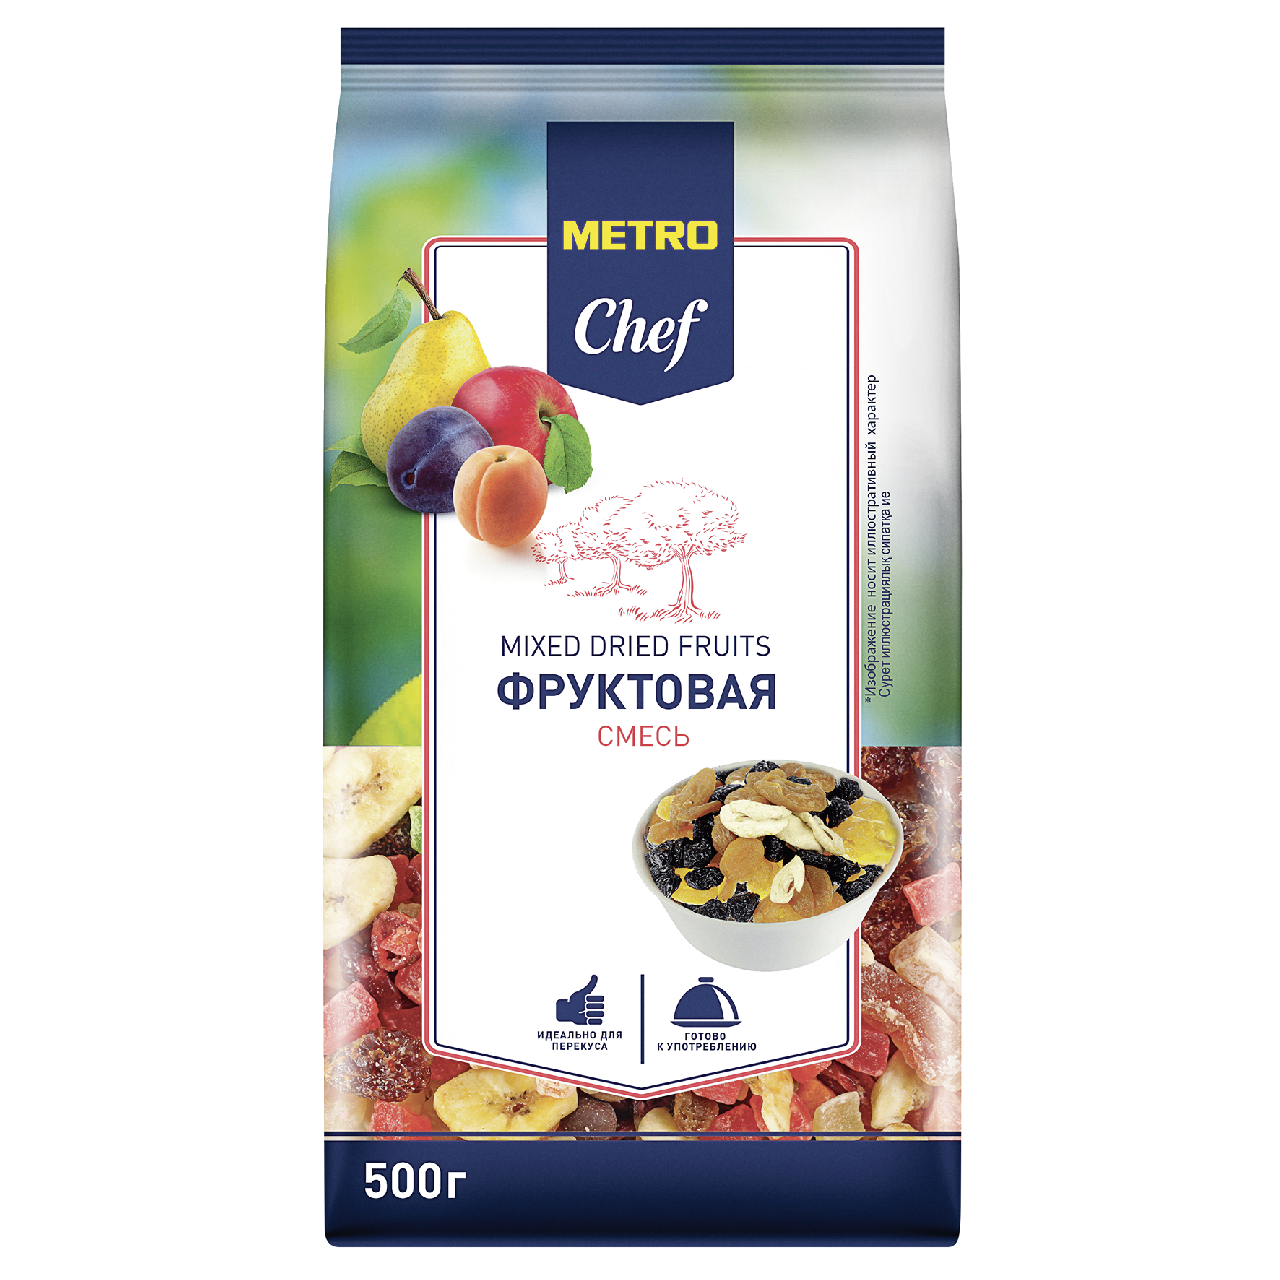 Фруктово-ореховая смесь Metro Chef 500 г